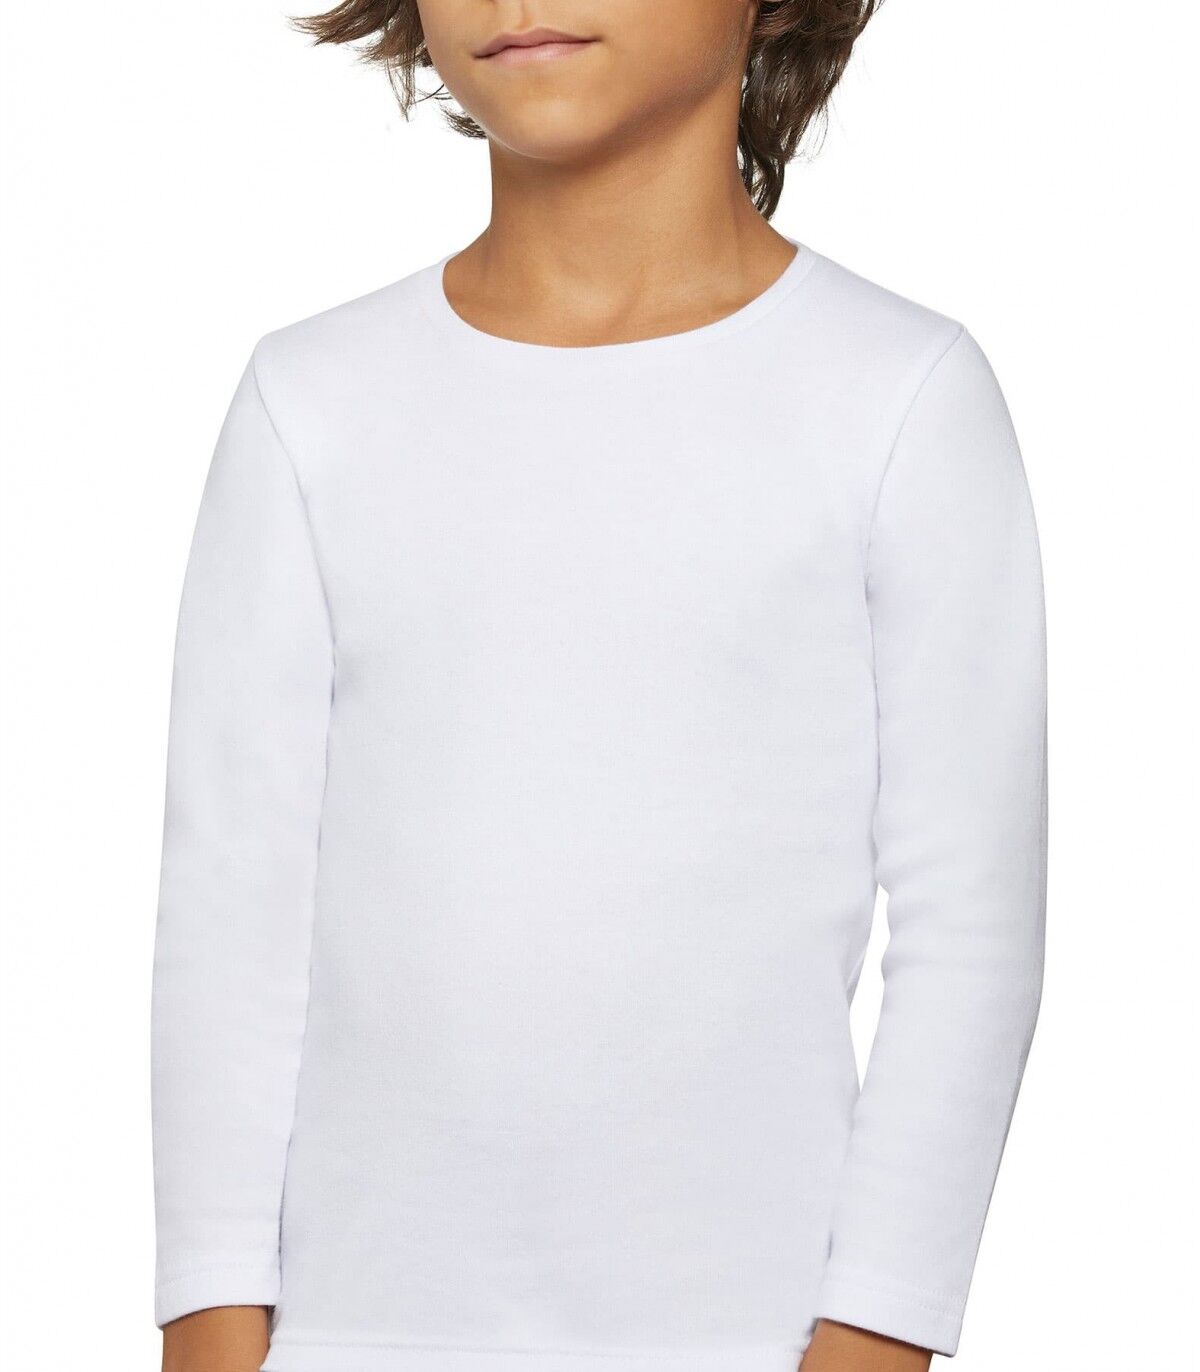 Camiseta infantil Térmica Ysabel Mora 18301 12 Blanco